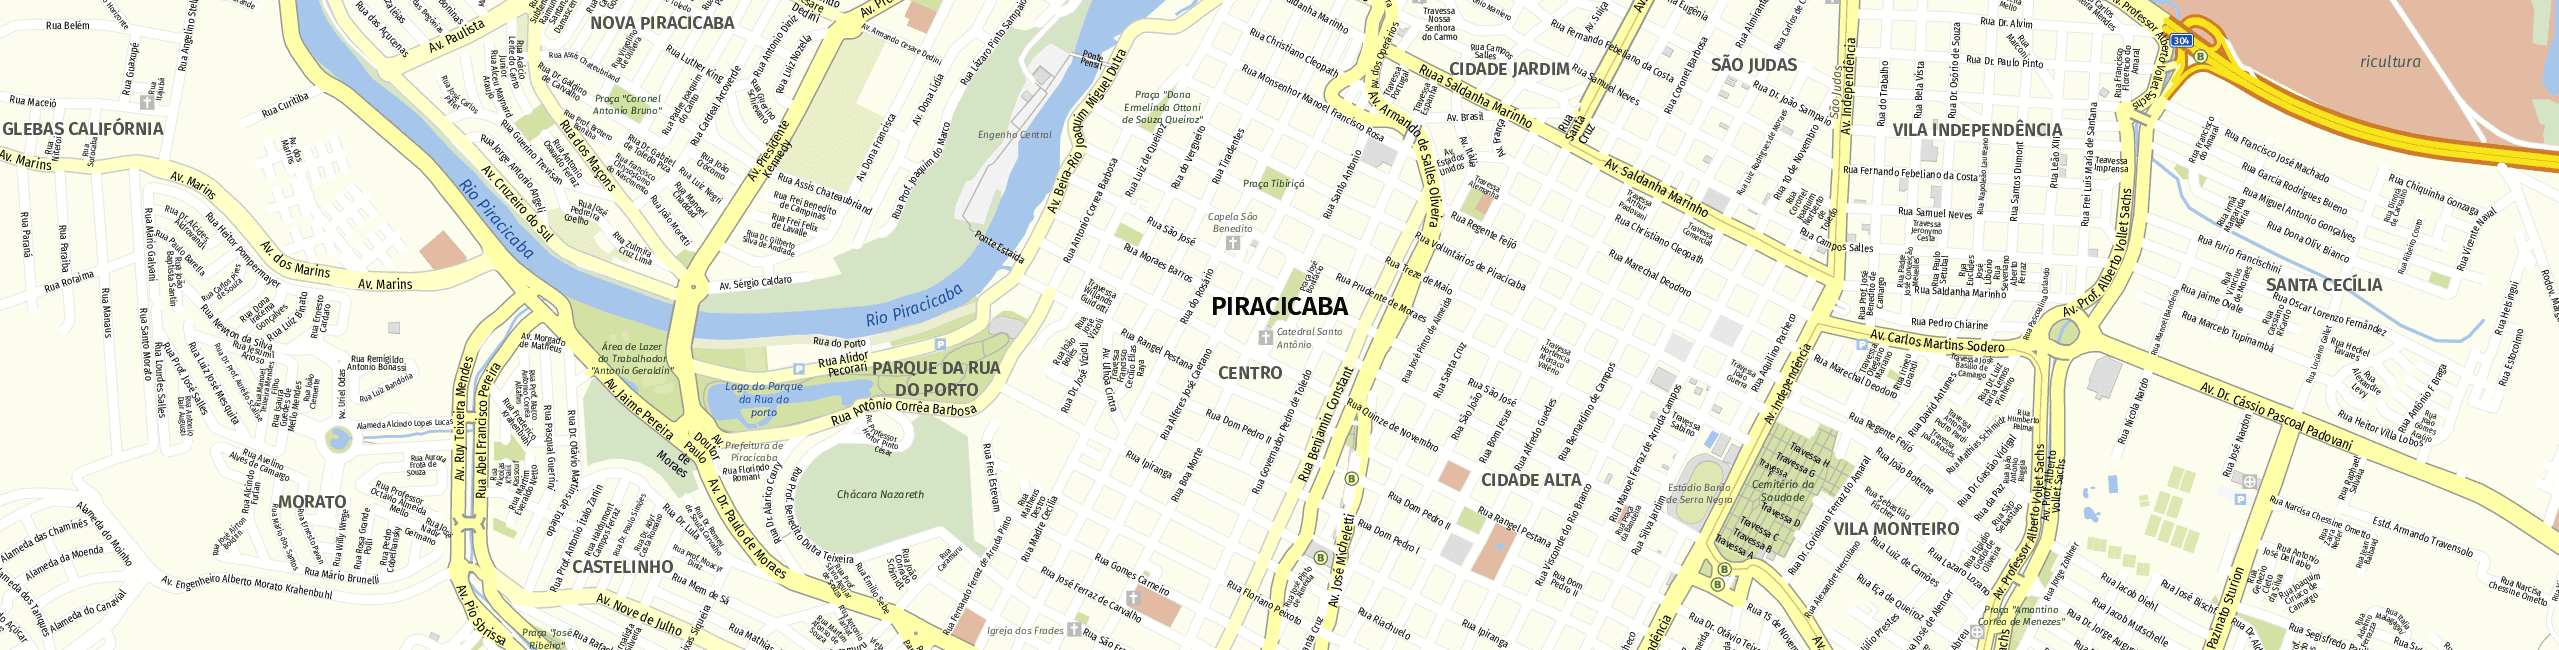 Stadtplan Piracicaba zum Downloaden.